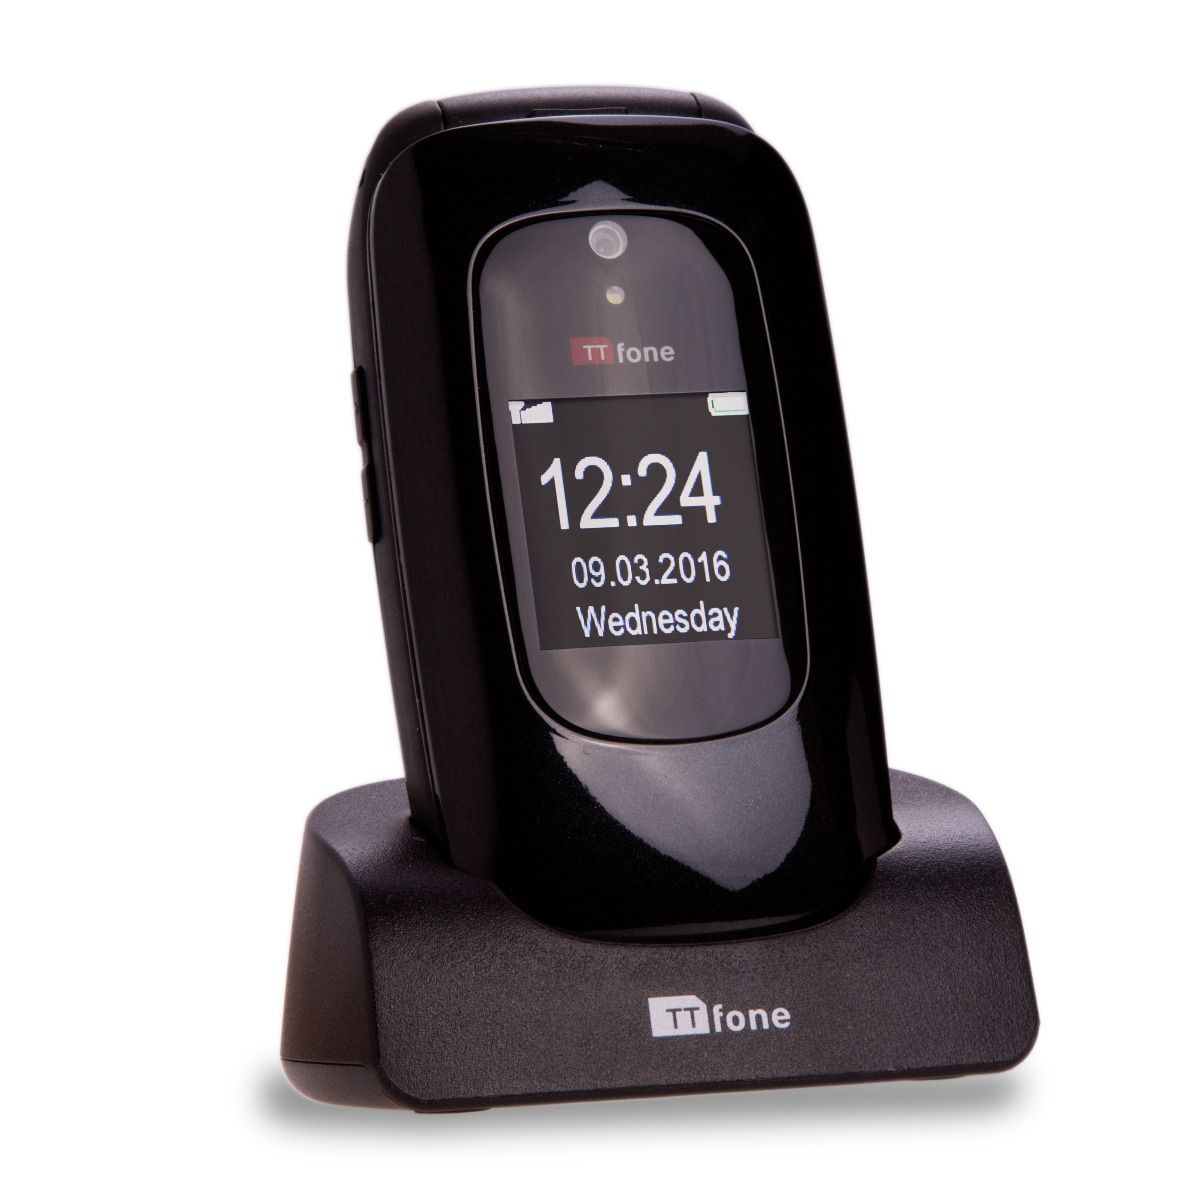 TTfone Lunar TT750 Flip Mobile Phone for the Elderly